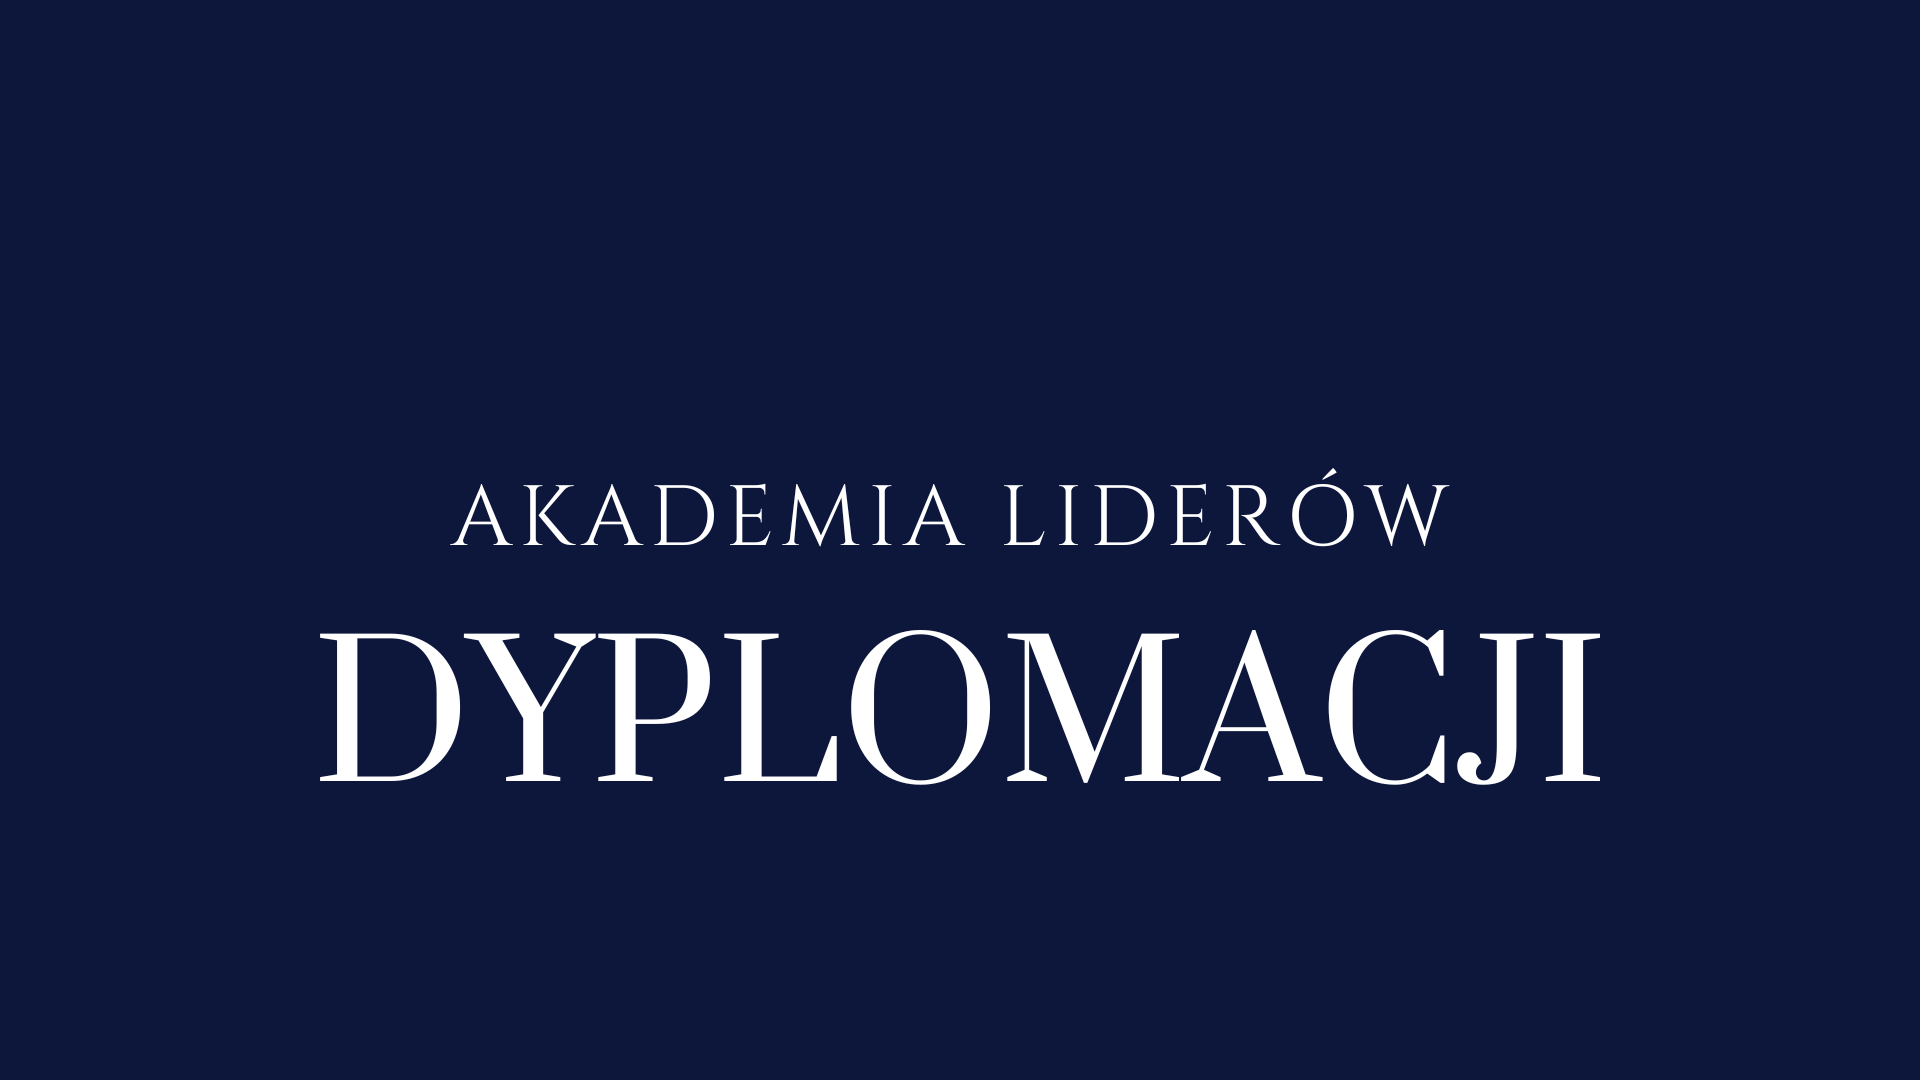 Akademia Liderów Dyplomacji – ogłoszenie naboru